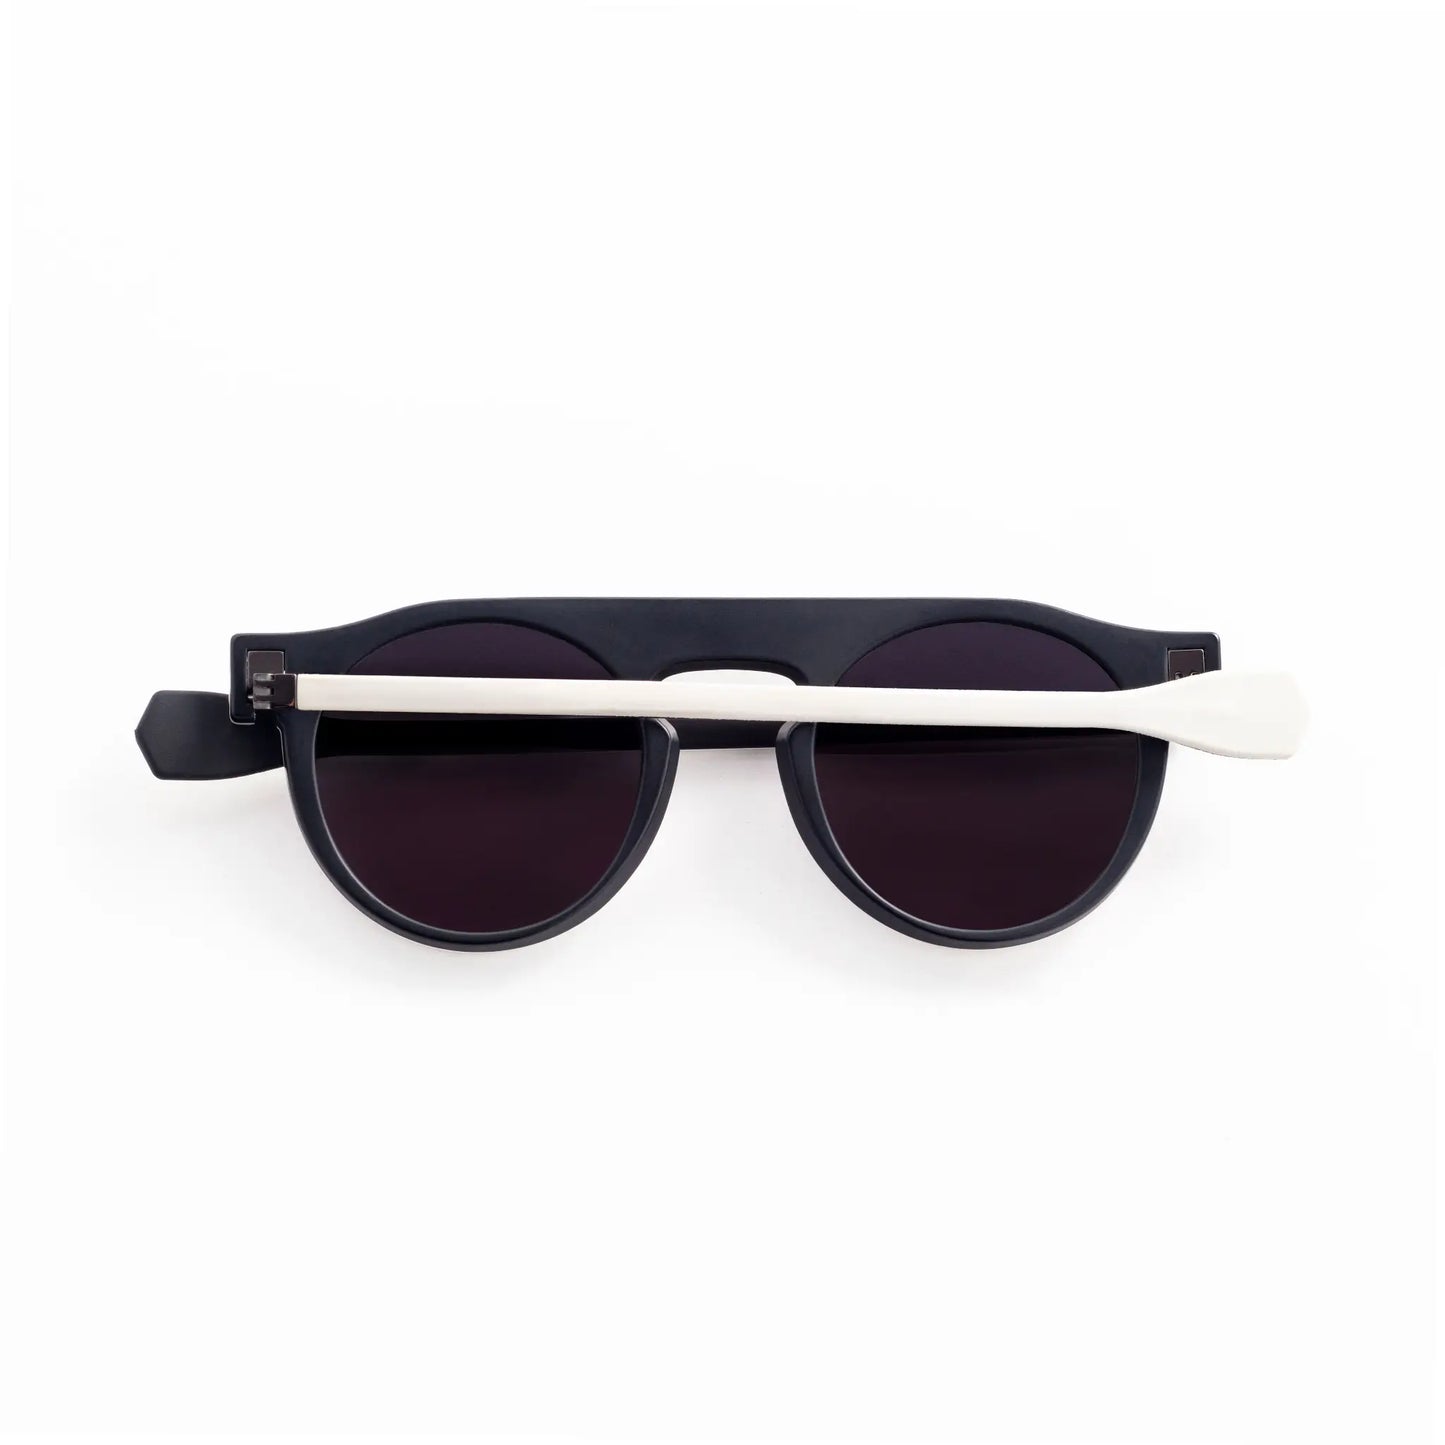 Reverso sunglasses black & white reversible & ultra light back view